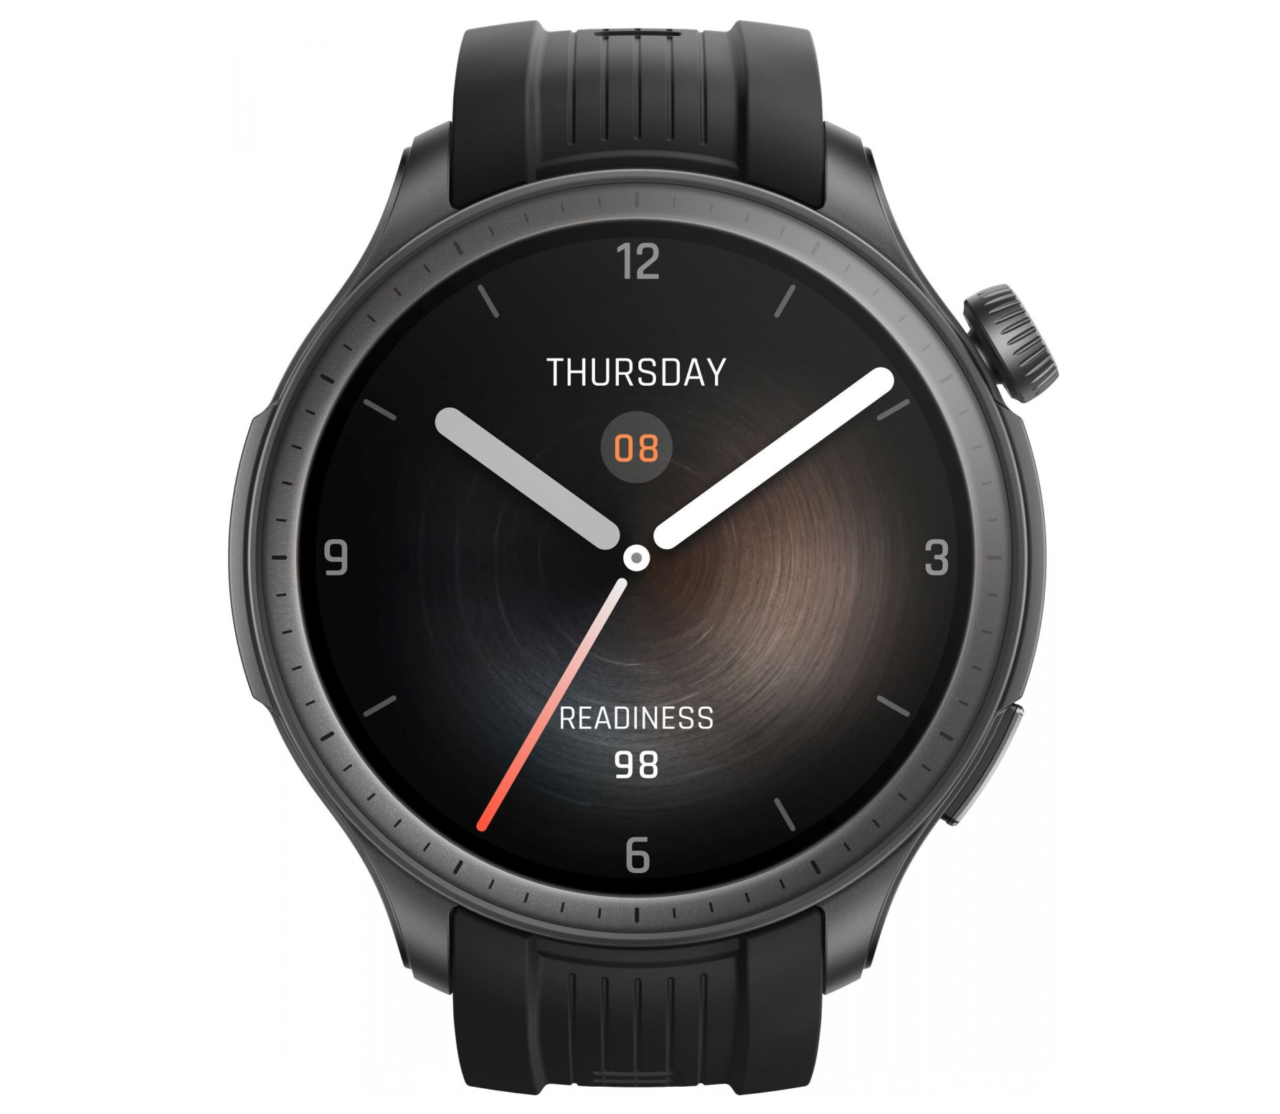 Czarny inteligentny zegarek z analogowym wyglądem tarczy, wyświetlającym 'THURSDAY 08', oraz wartość 'READINESS 98' na dole.